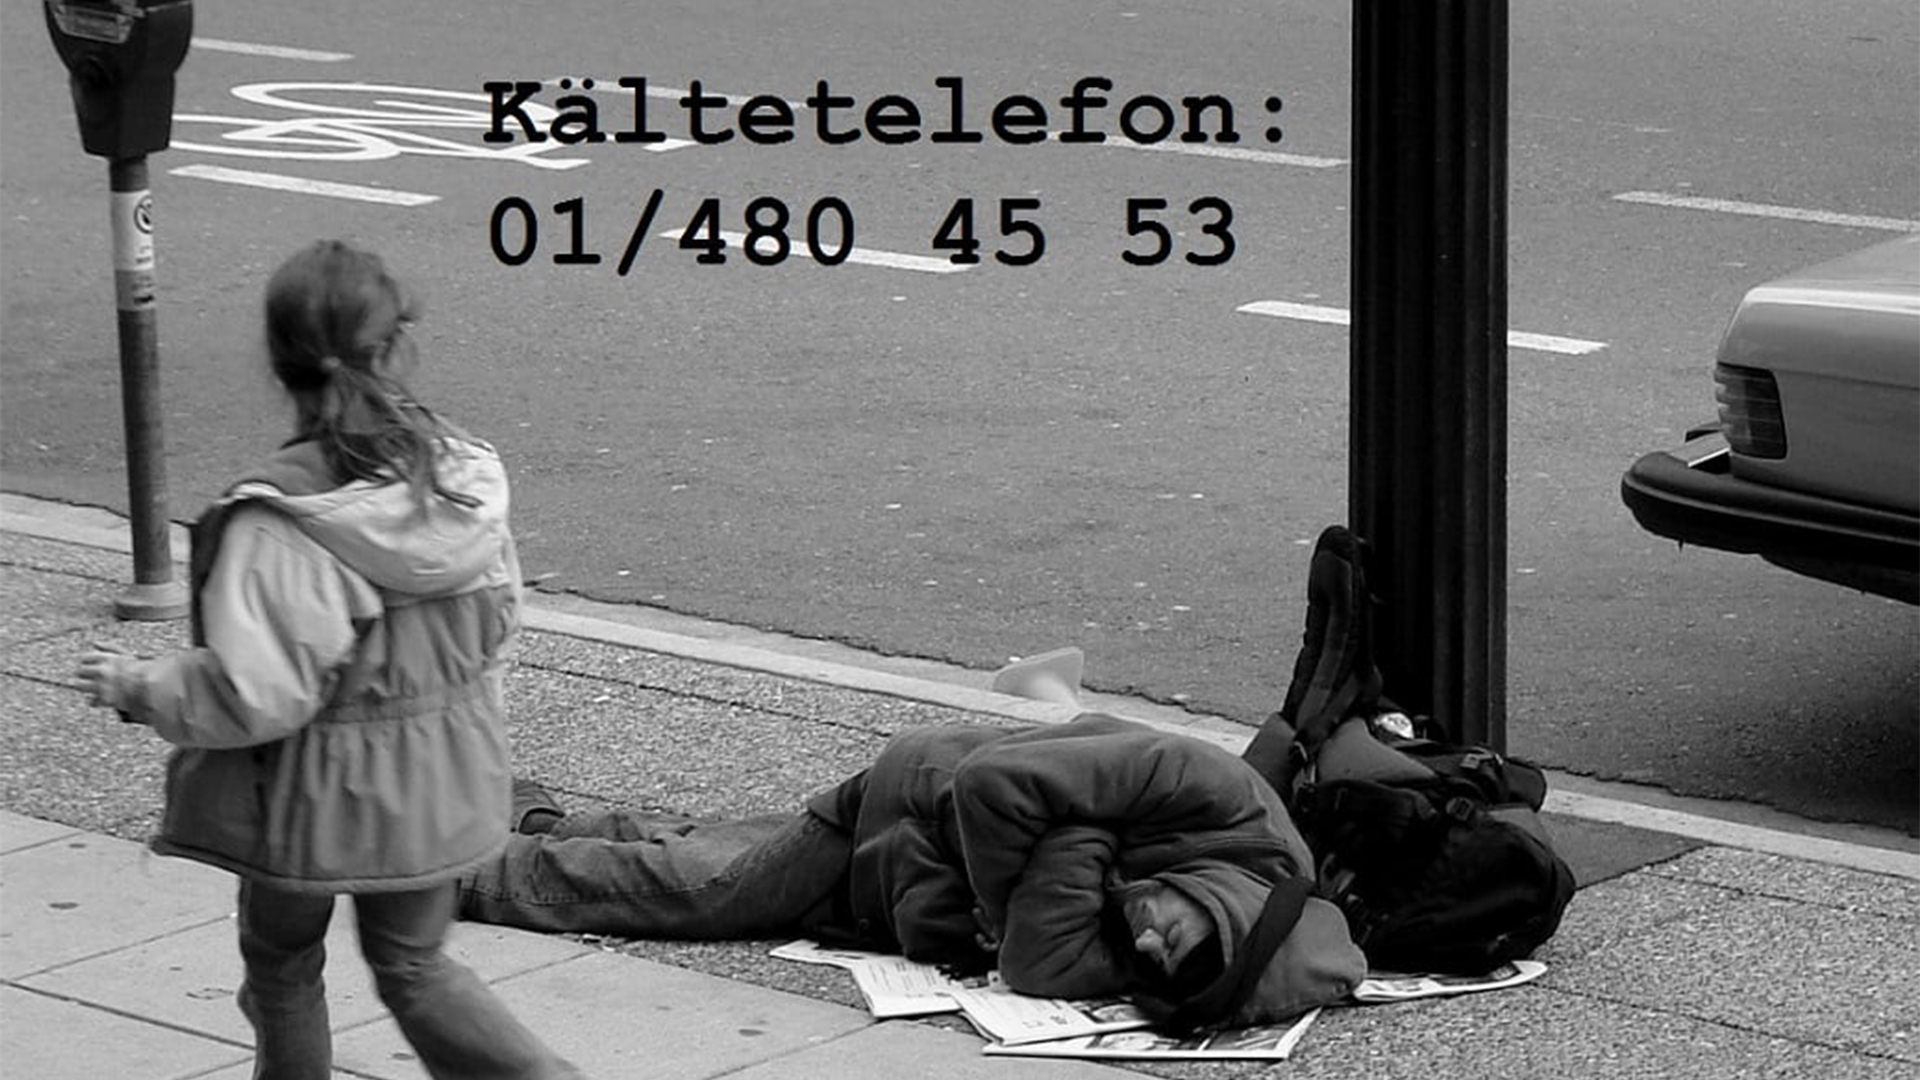 Bild eines obdachlosen Menschen, der auf der Straße liegt. Kältetelefon: 01/480 45 53